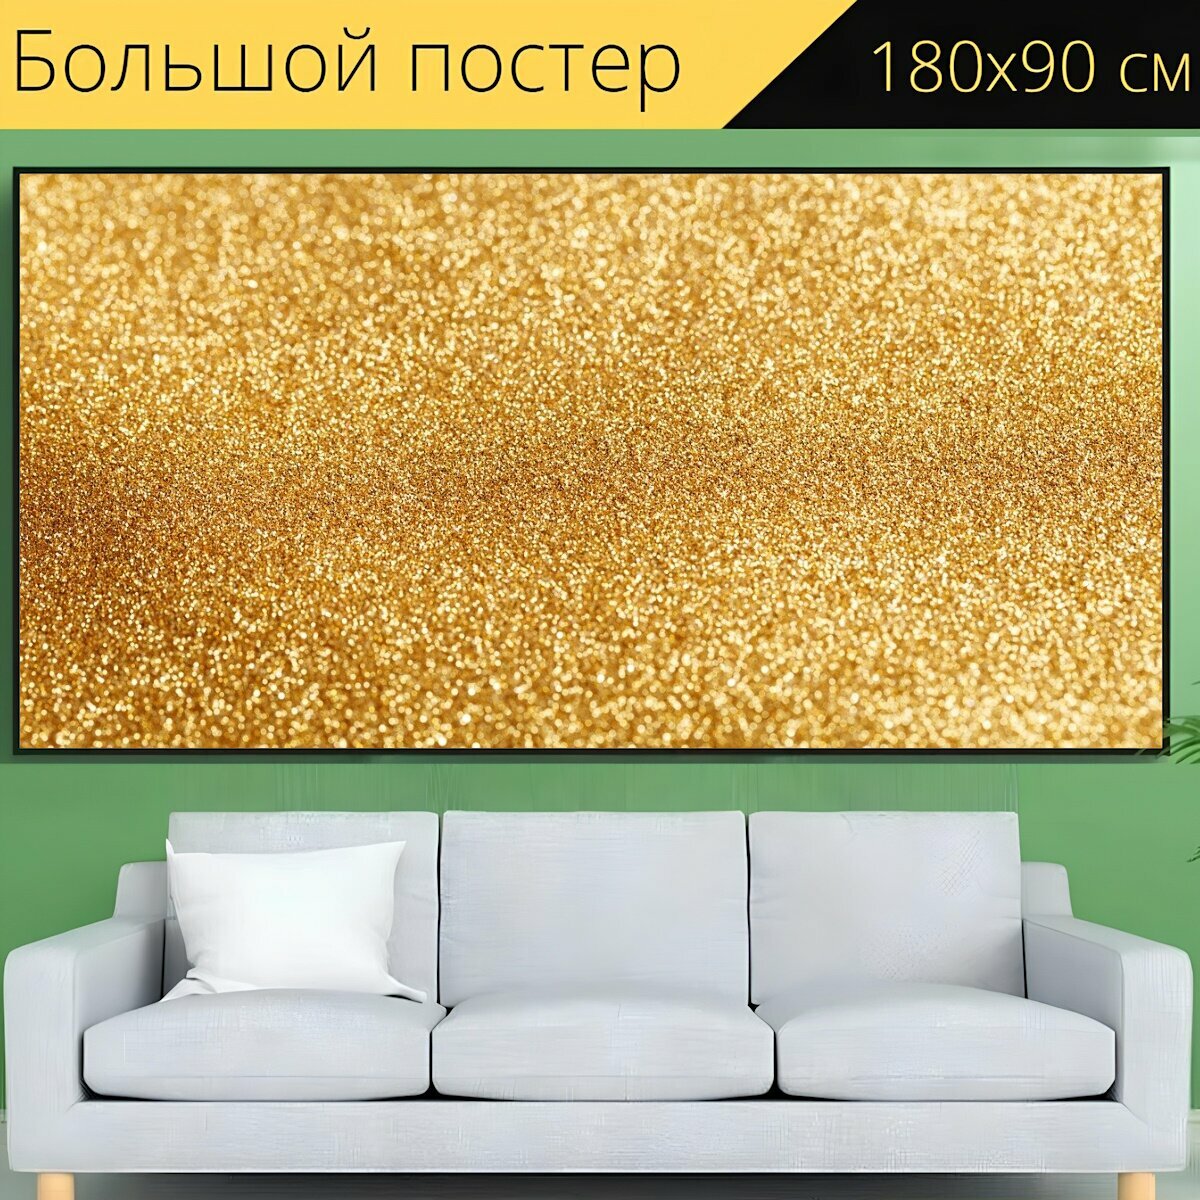 Большой постер "Золотой, текстура, золото" 180 x 90 см. для интерьера